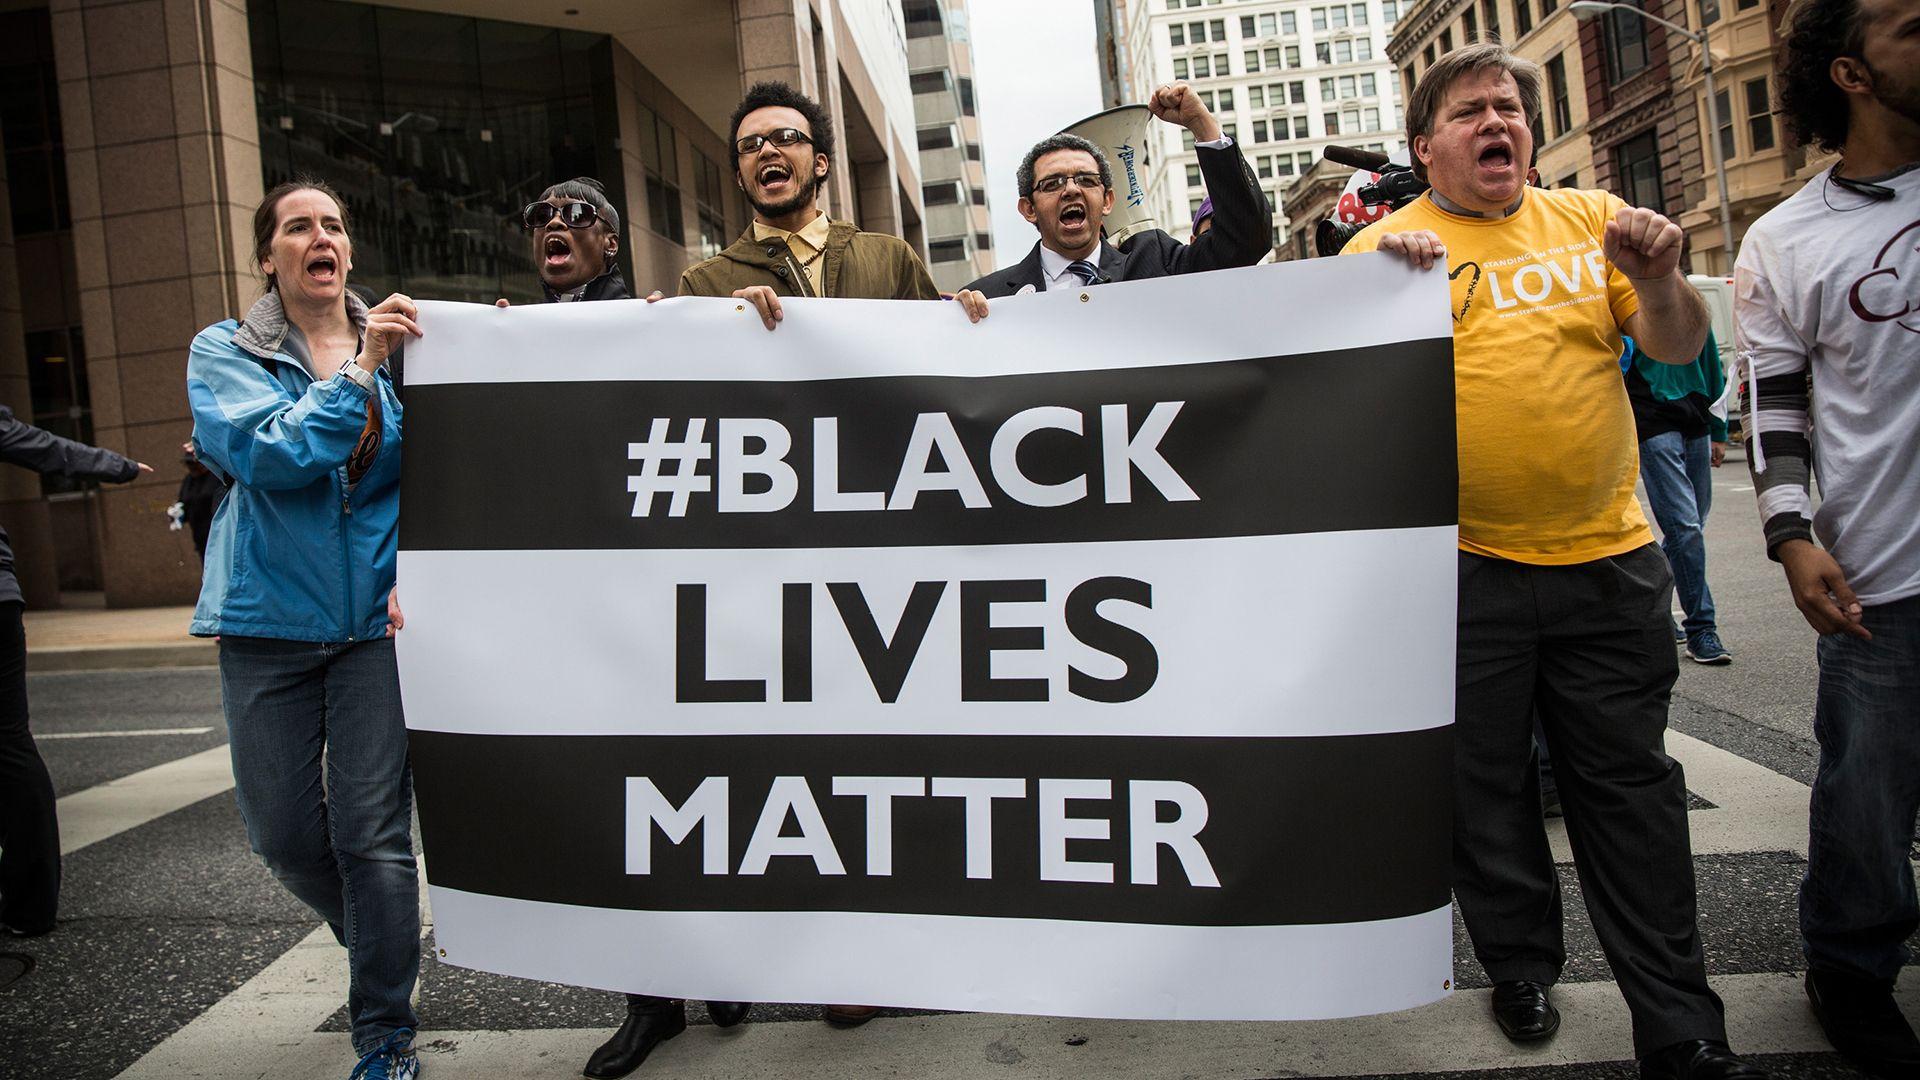 BlackLivesMatter: How a Hashtag Became a Digital Civil Rights Anthem